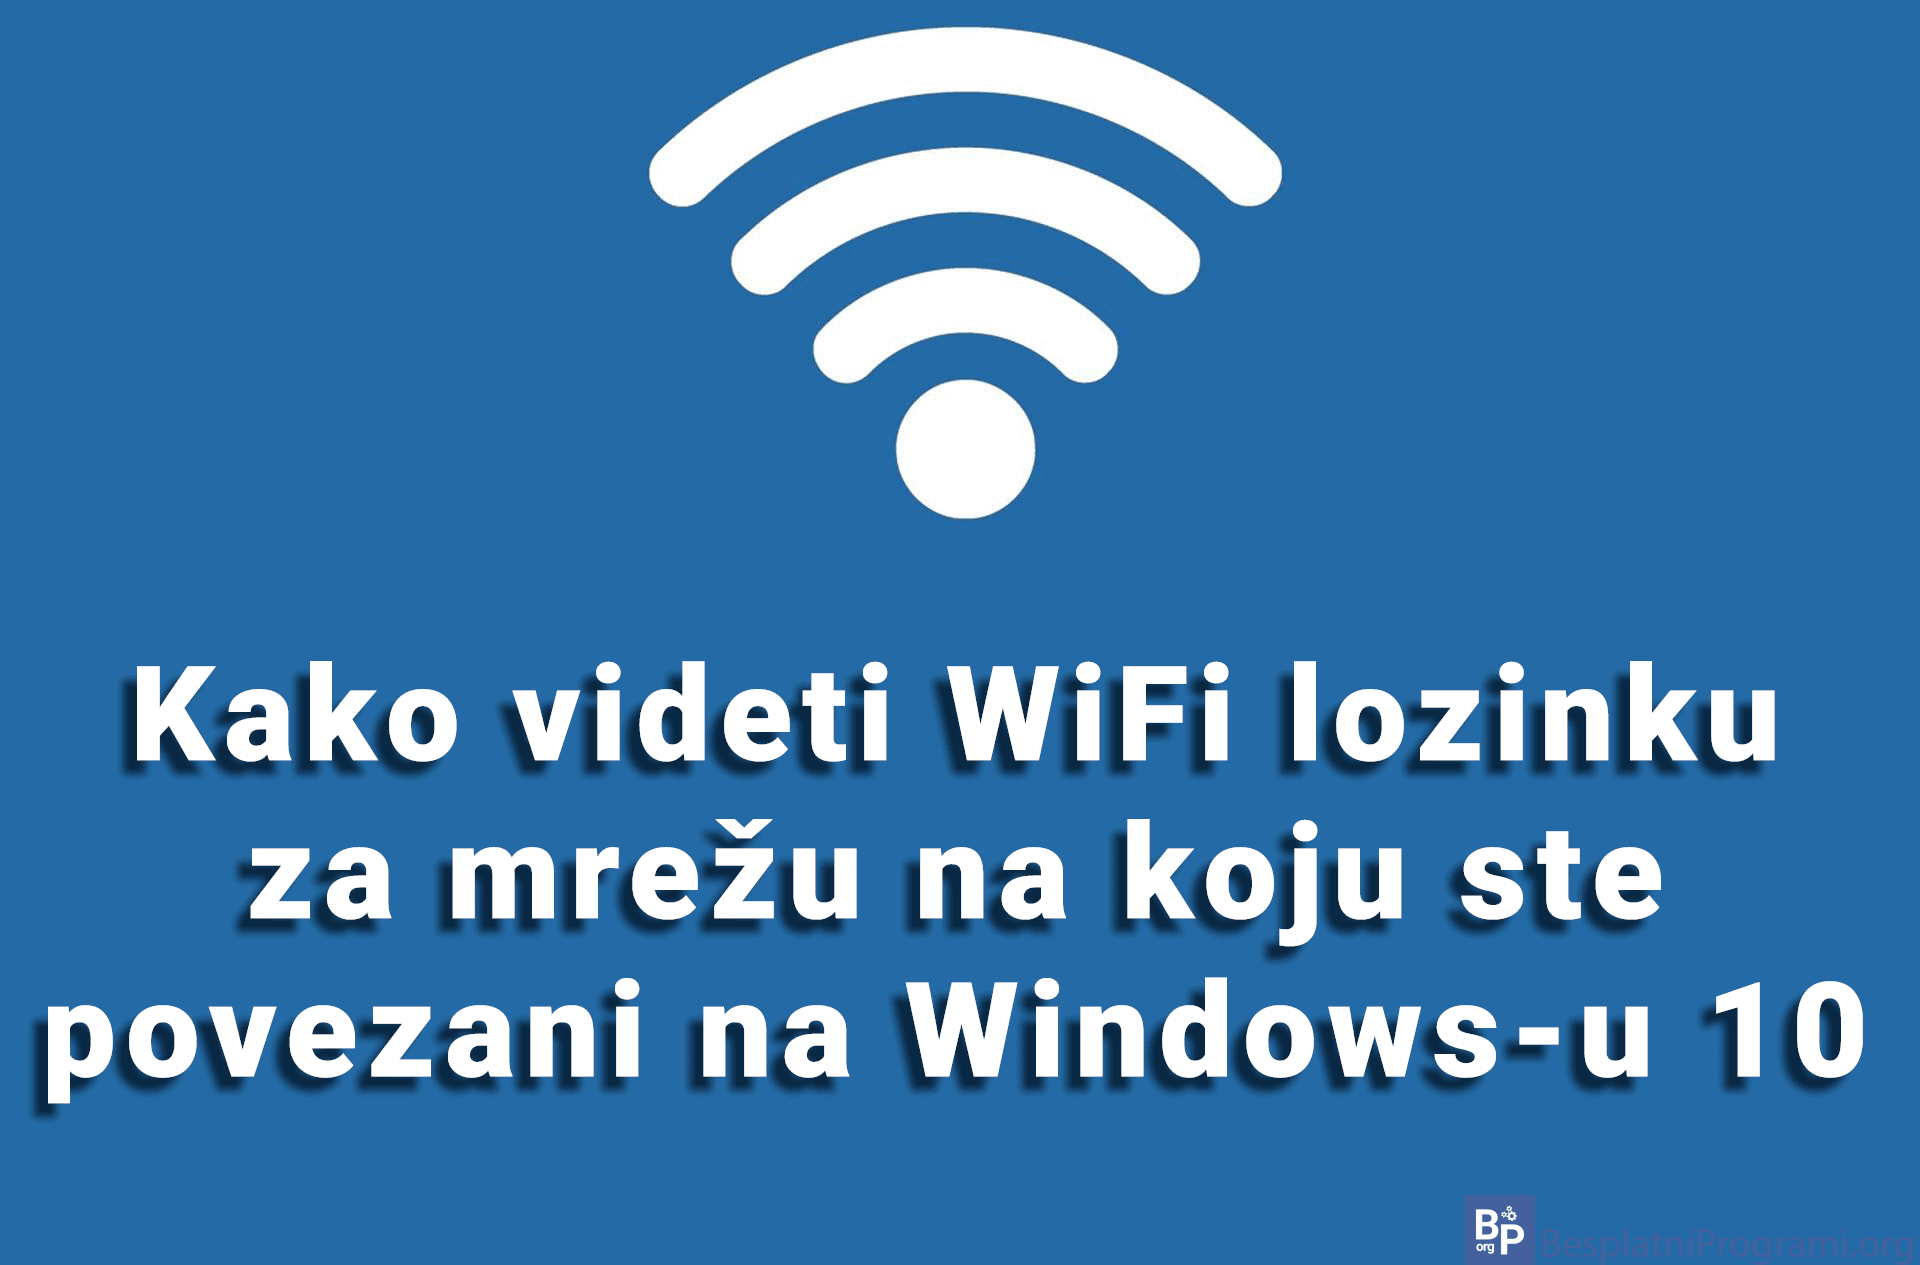 Kako videti WiFi lozinku za mrežu na koju ste povezani na Windows-u 10